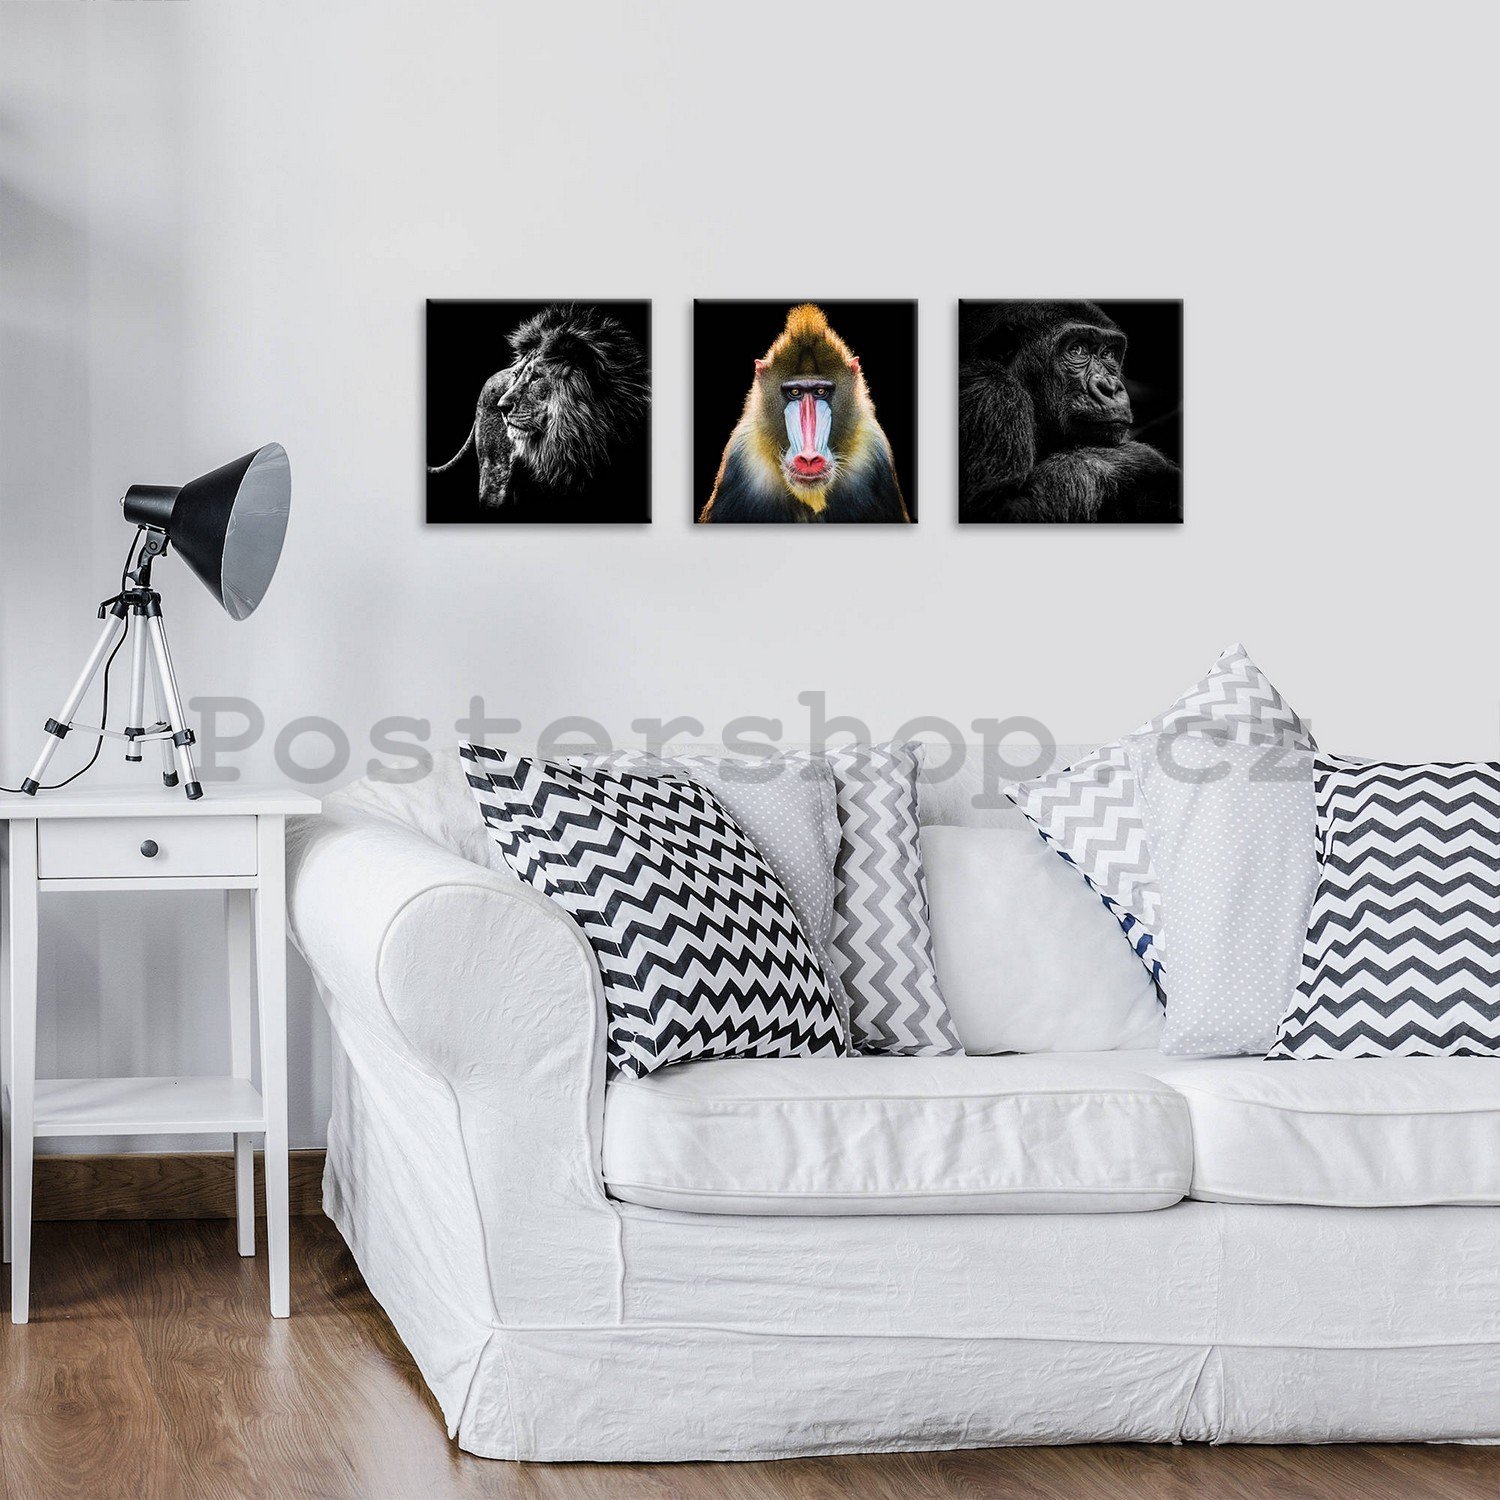 Obraz na plátně: Lev, Mandril a Gorila - set 3ks 25x25cm